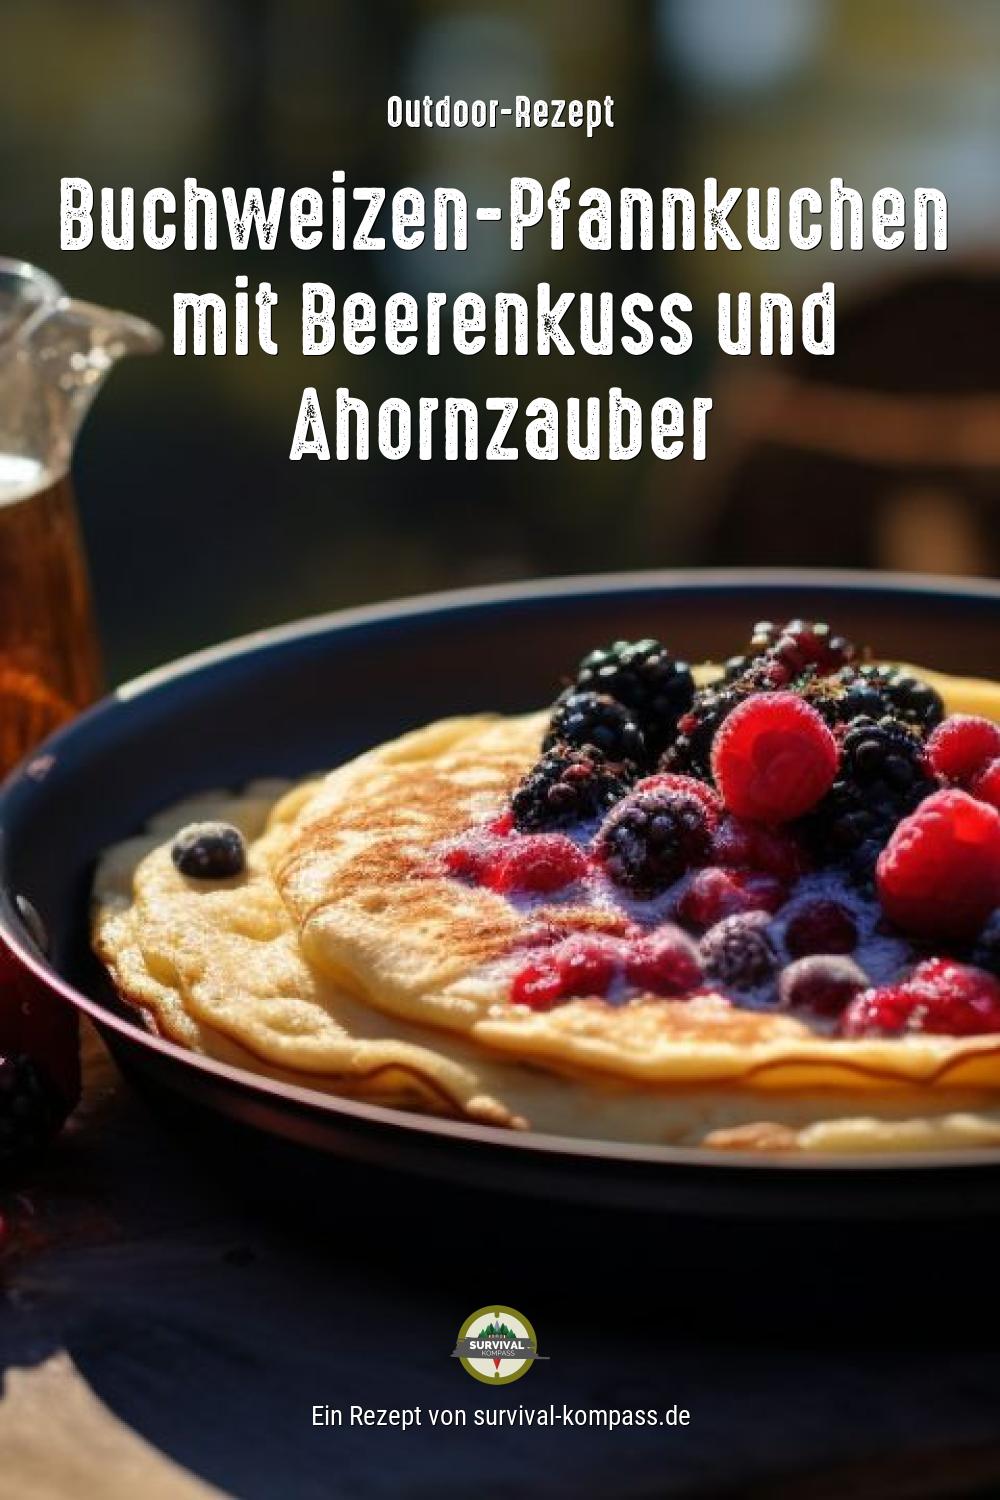 Buchweizen-Pfannkuchen mit Beerenkuss und Ahornzauber